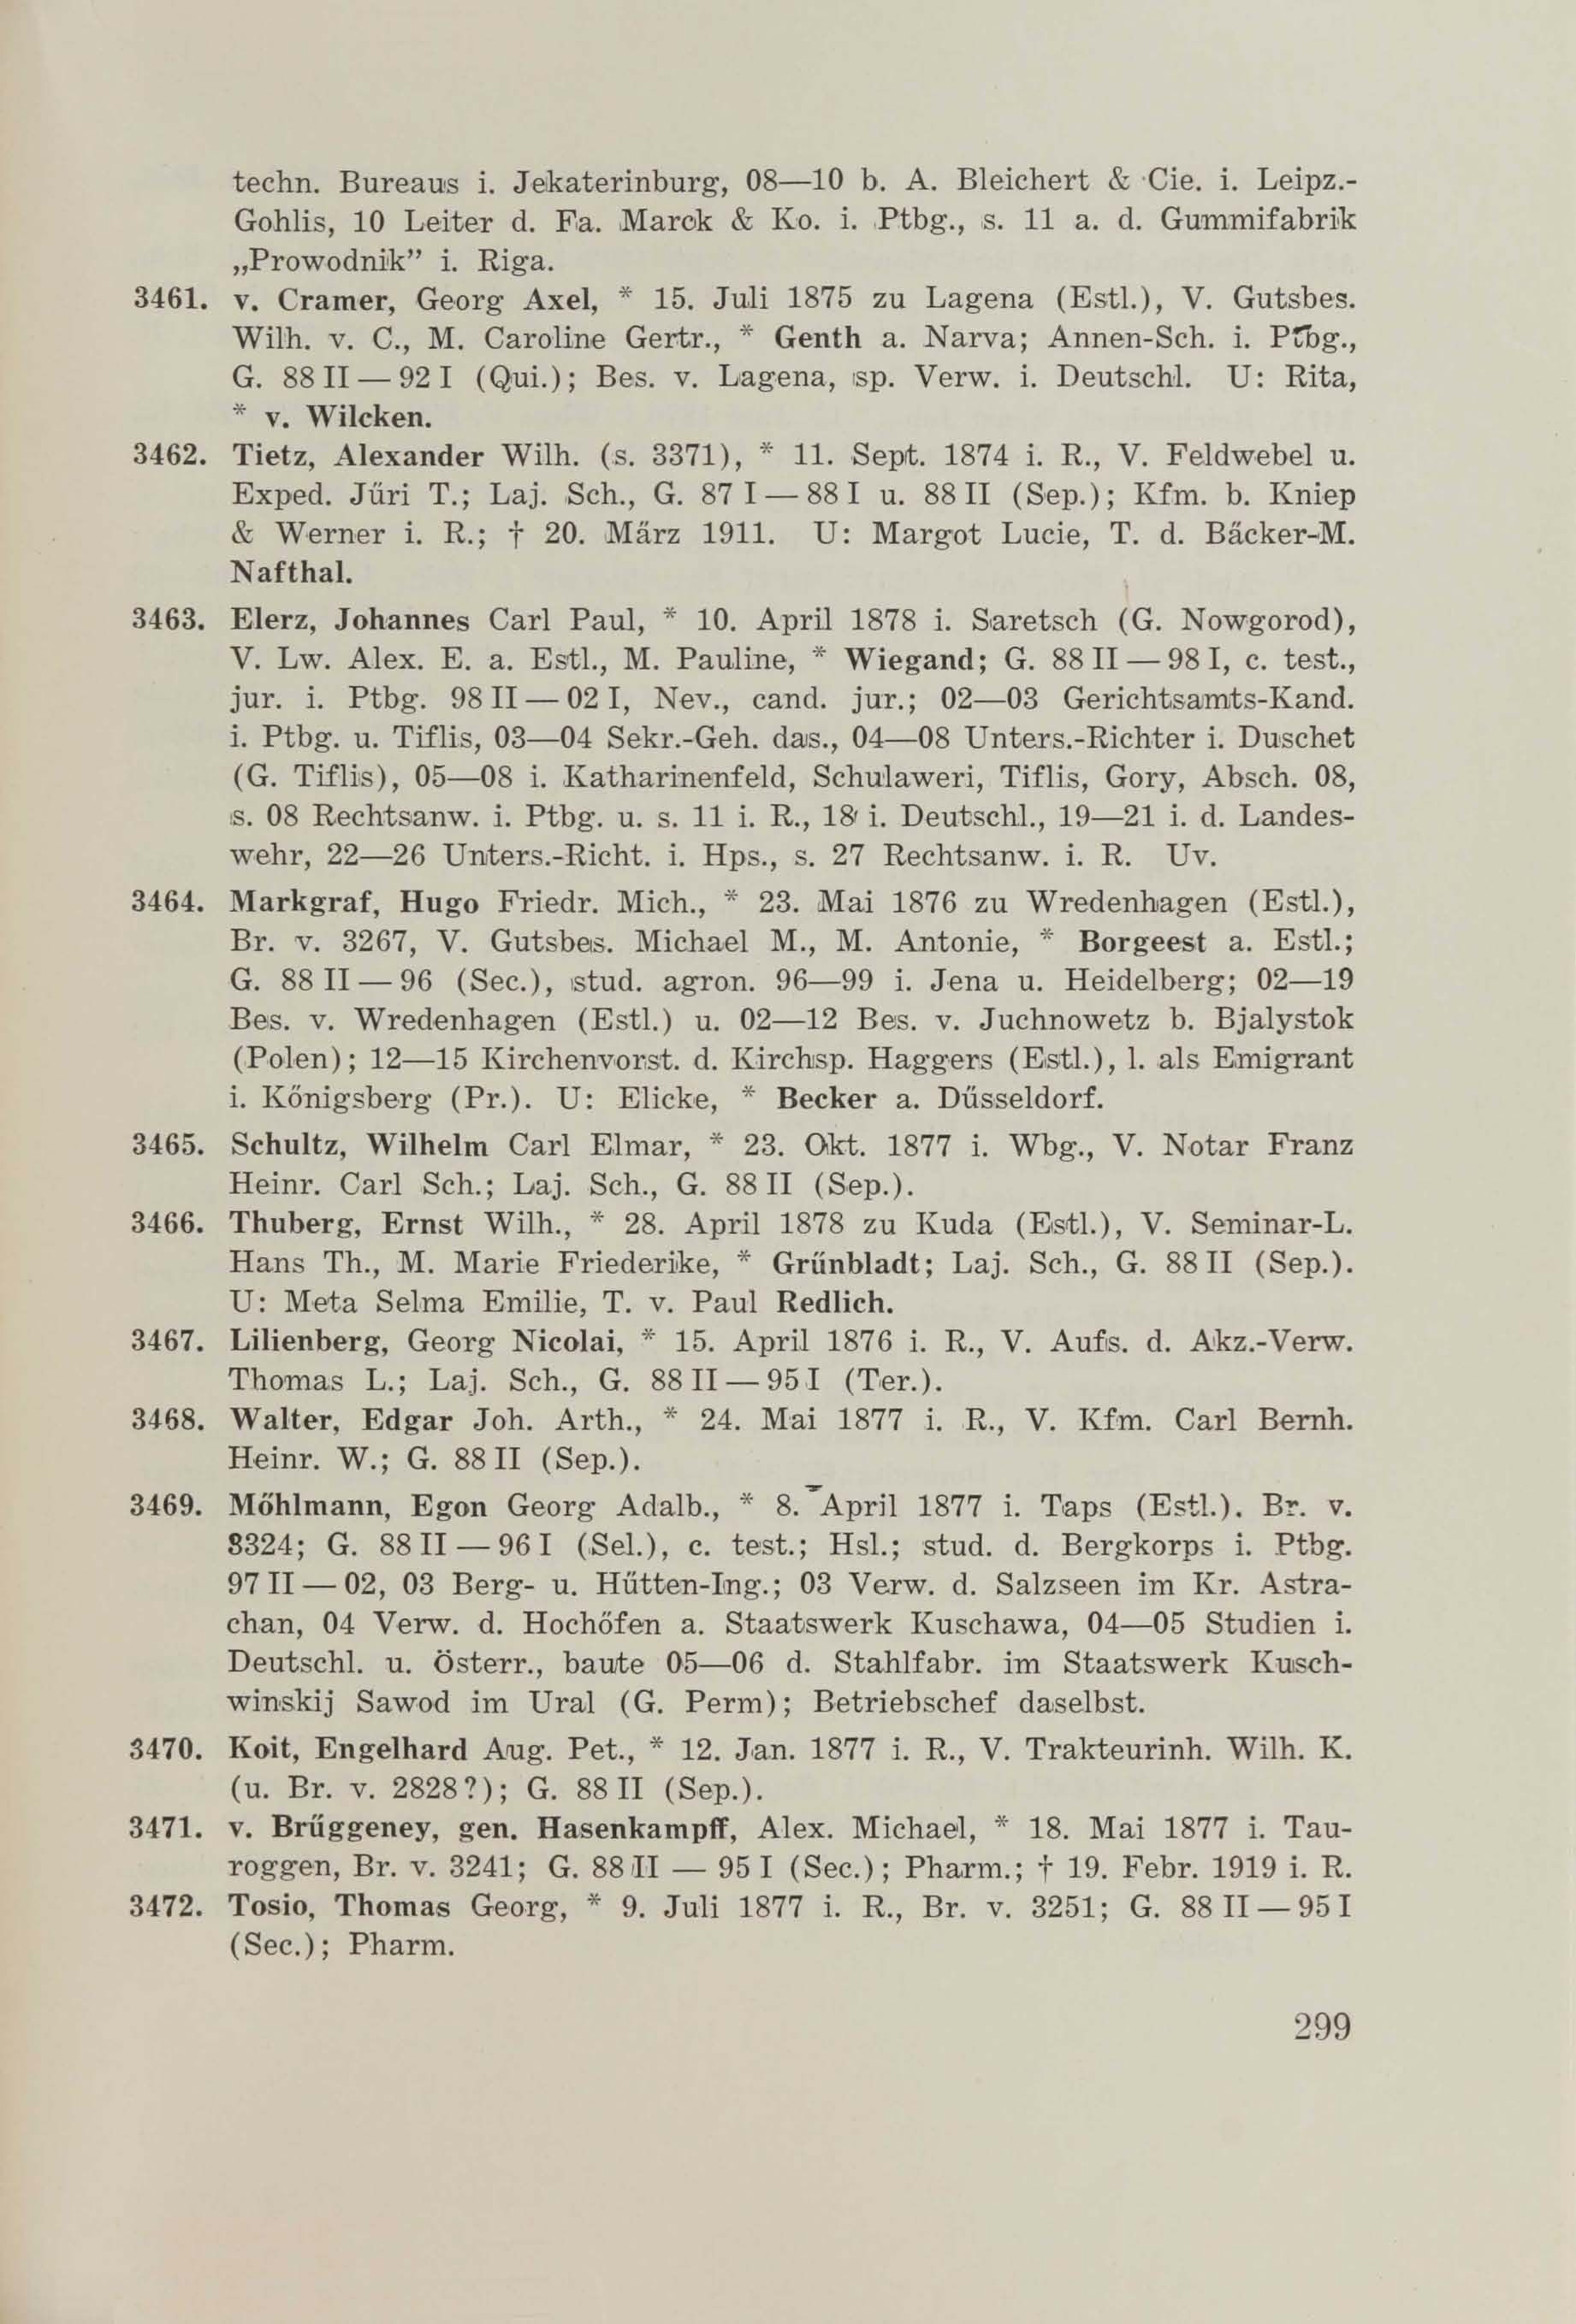 Schüler-Verzeichnis des Revalschen Gouvernements-Gymnasiums 1805–1890 (1931) | 309. (299) Main body of text